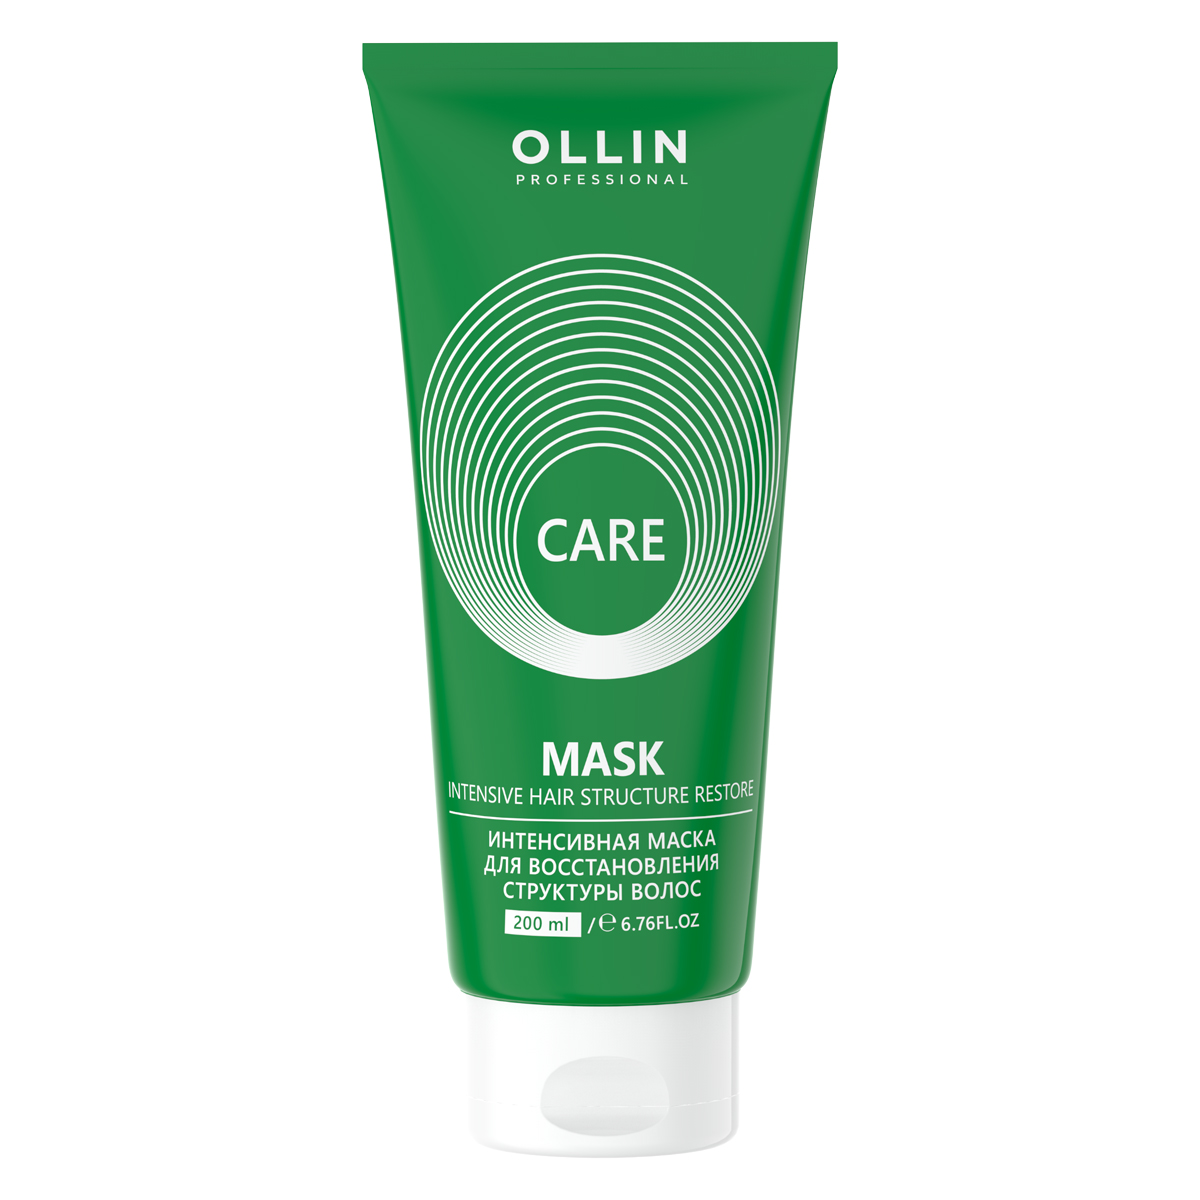 Ollin Professional Интенсивная маска для восстановления стру